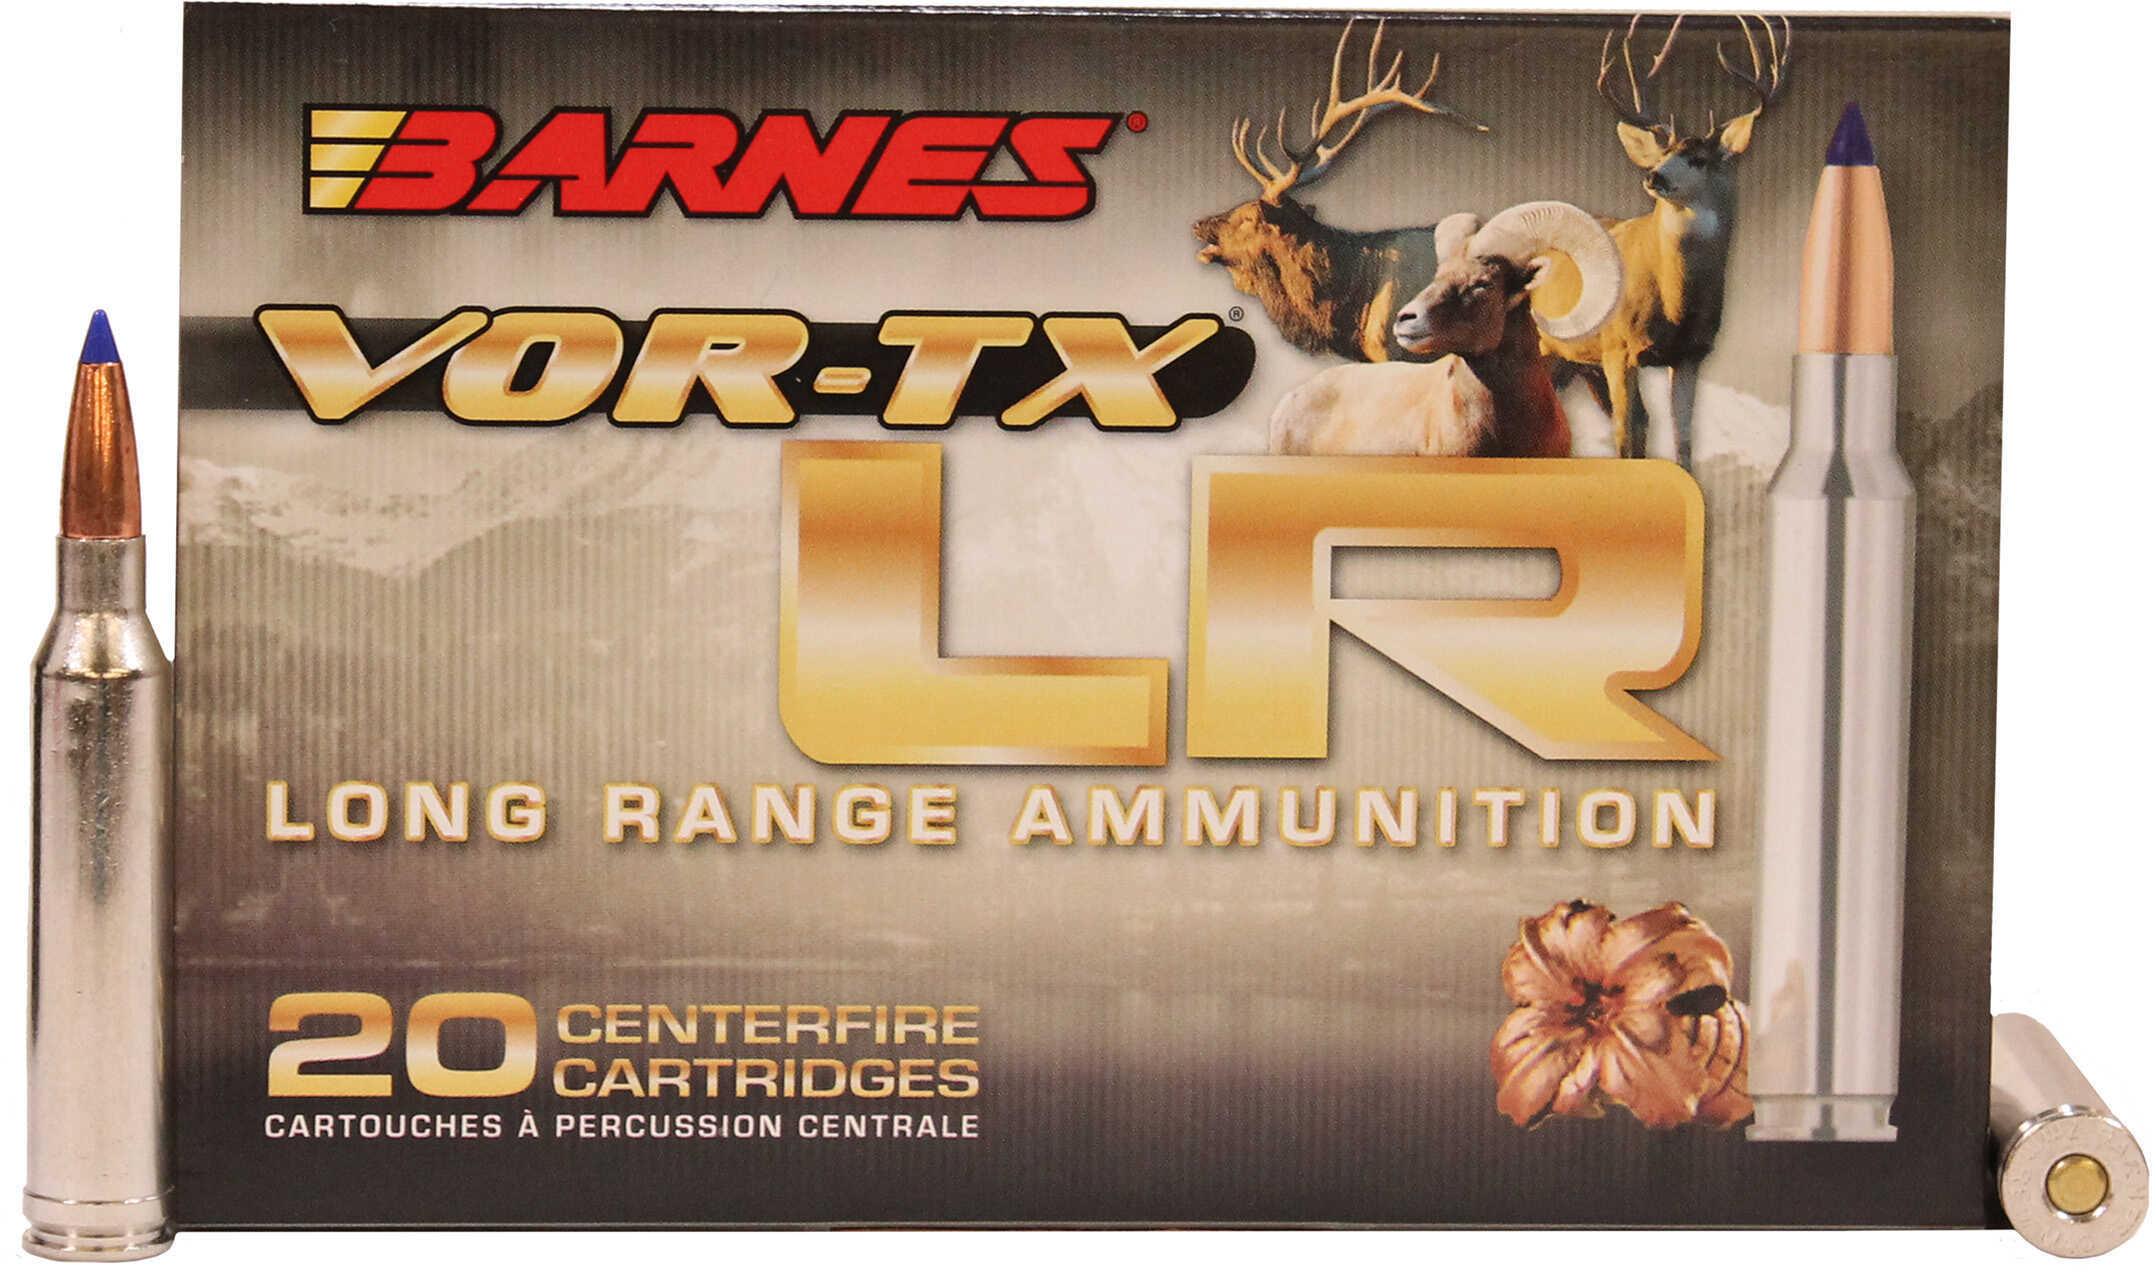 7mm Remington Magnum 20 Rounds Ammunition Barnes 139 Grain LRX Boat Tail